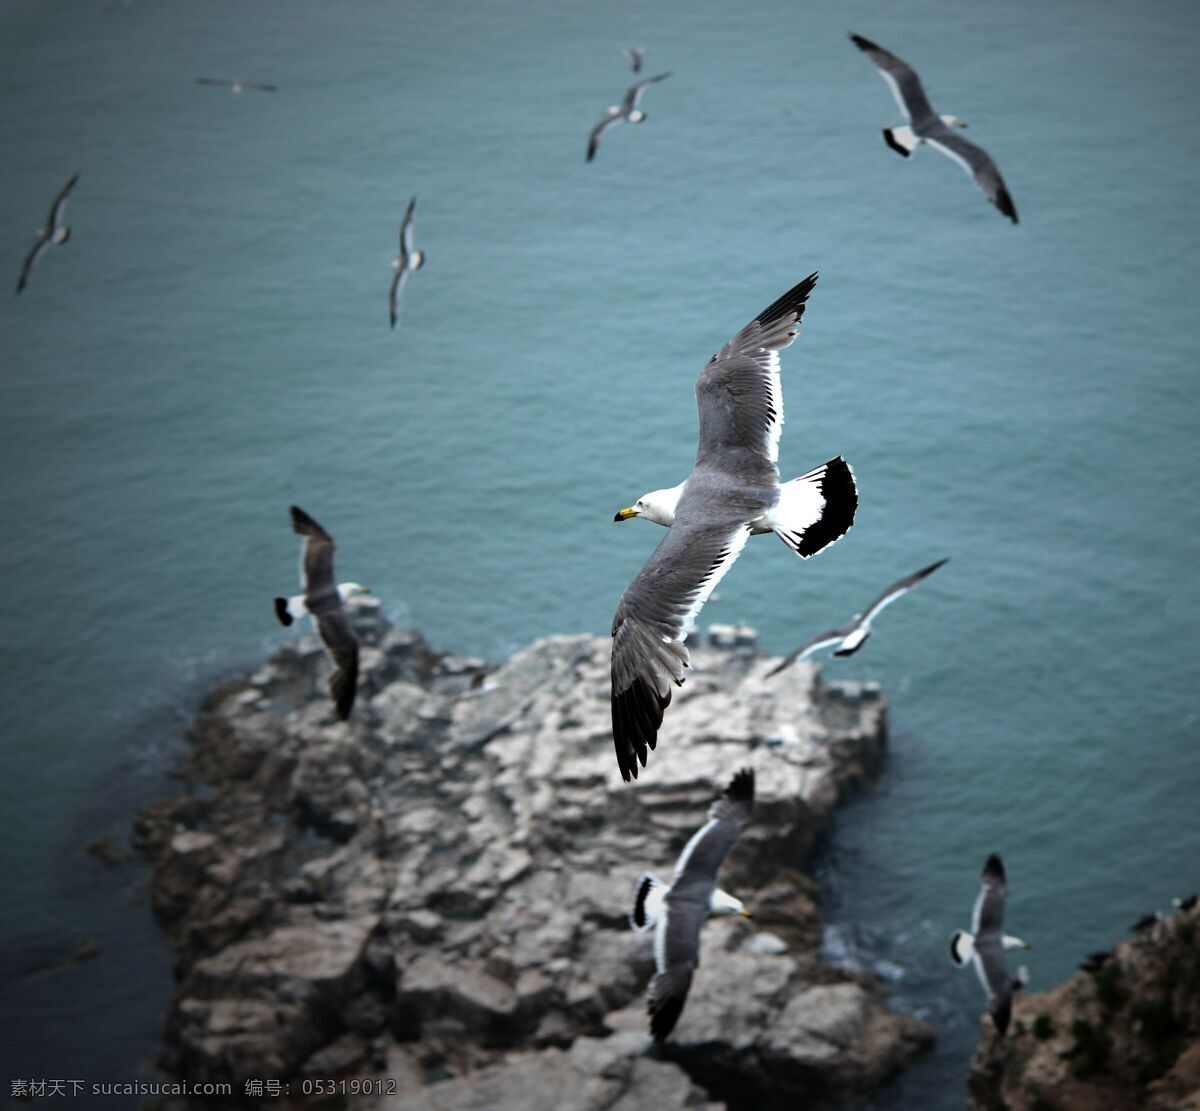 海鸥 海驴岛 飞翔的海鸥 鸟类 海鸟 生物世界